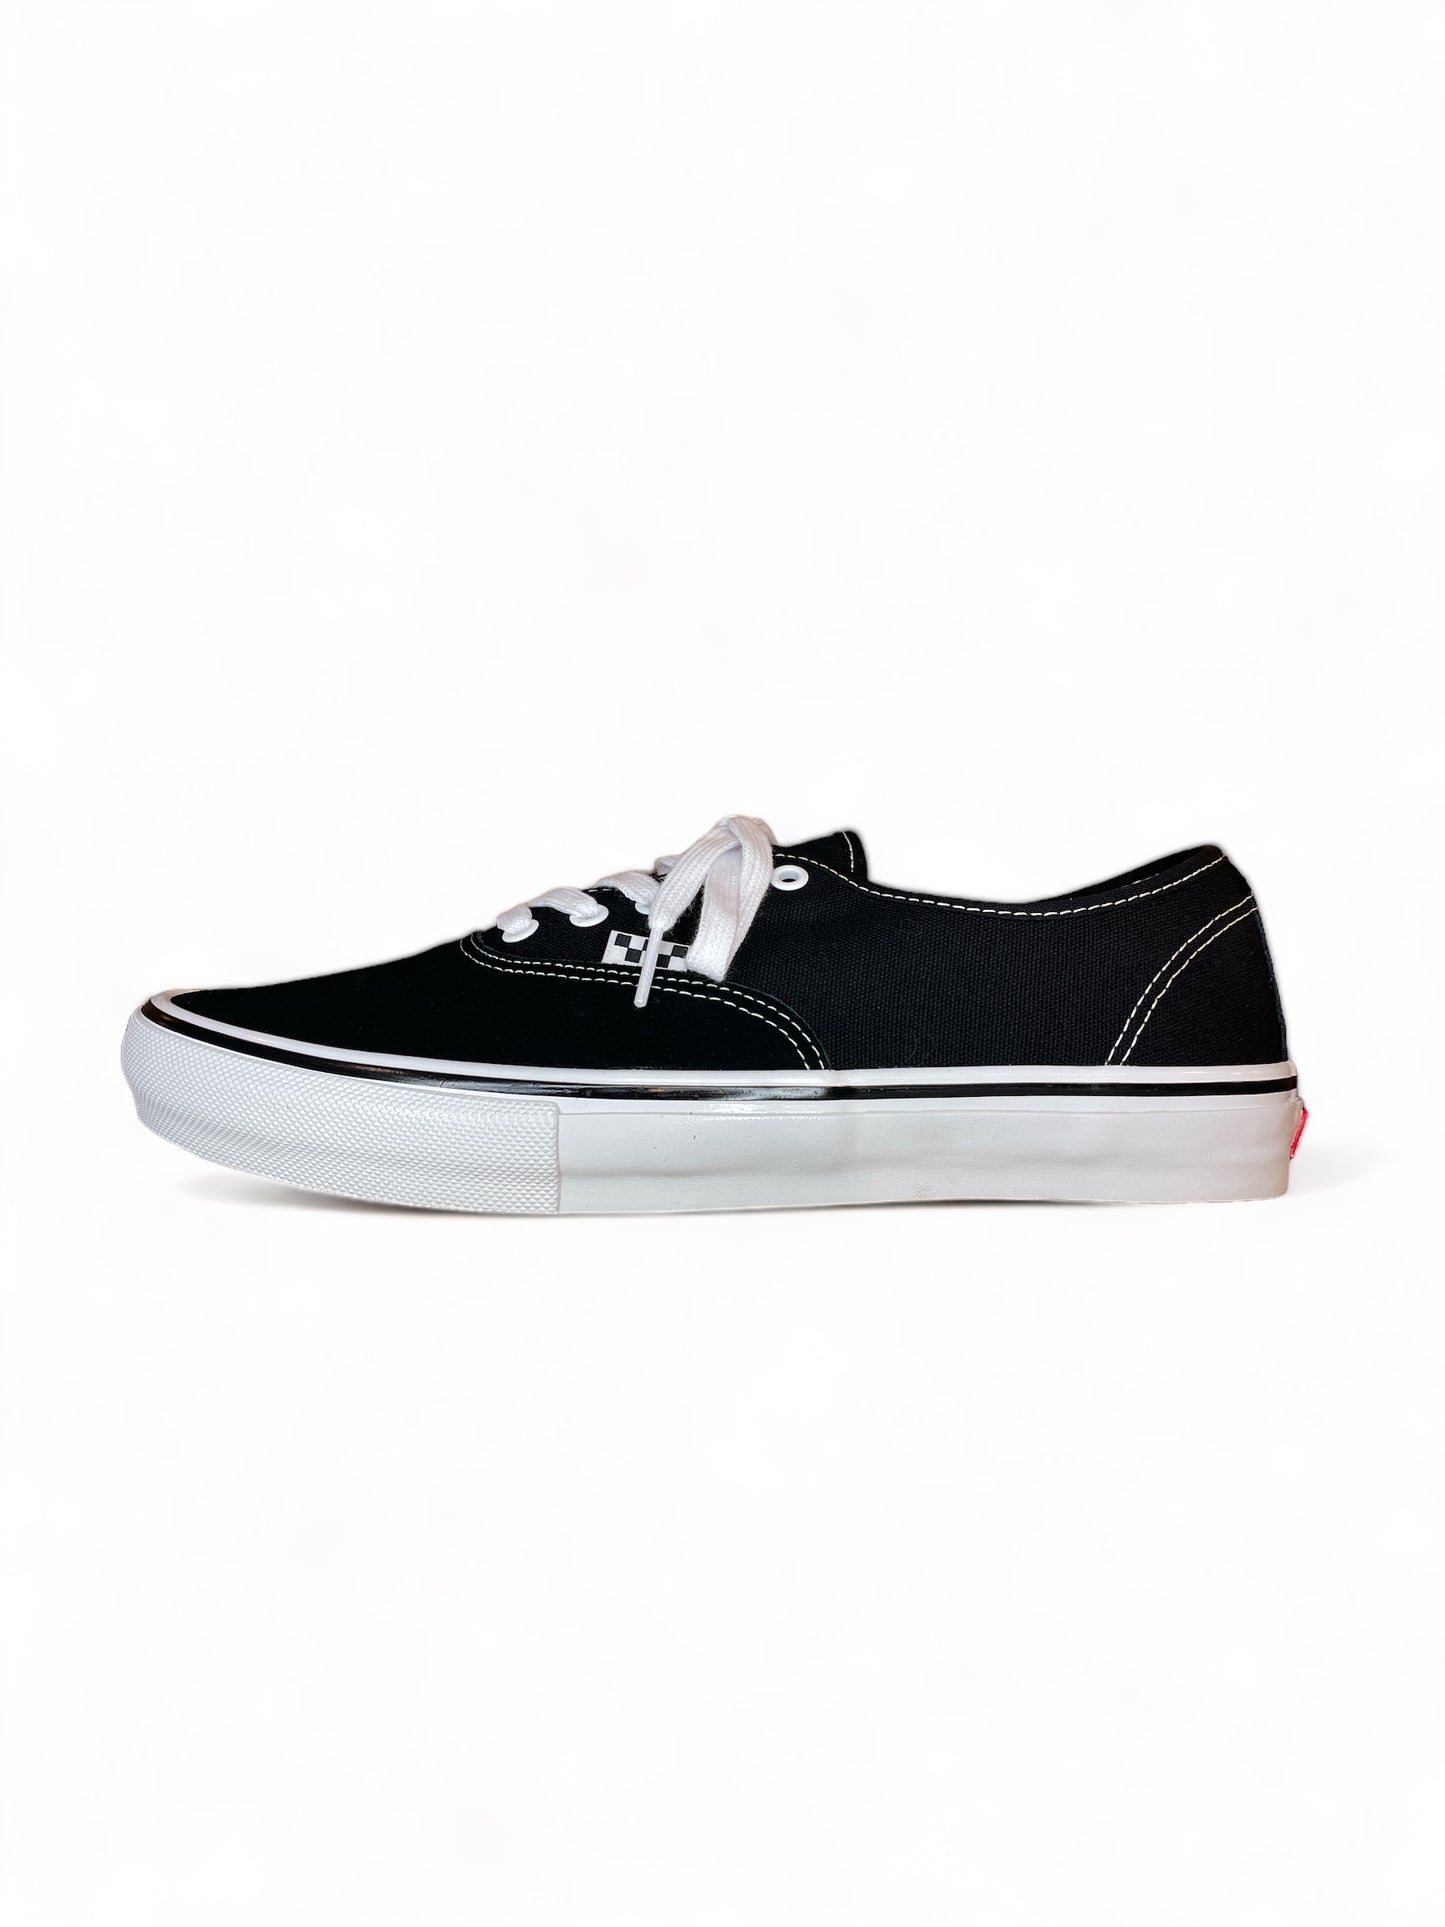 Vans Skate Authentic (Black/White)